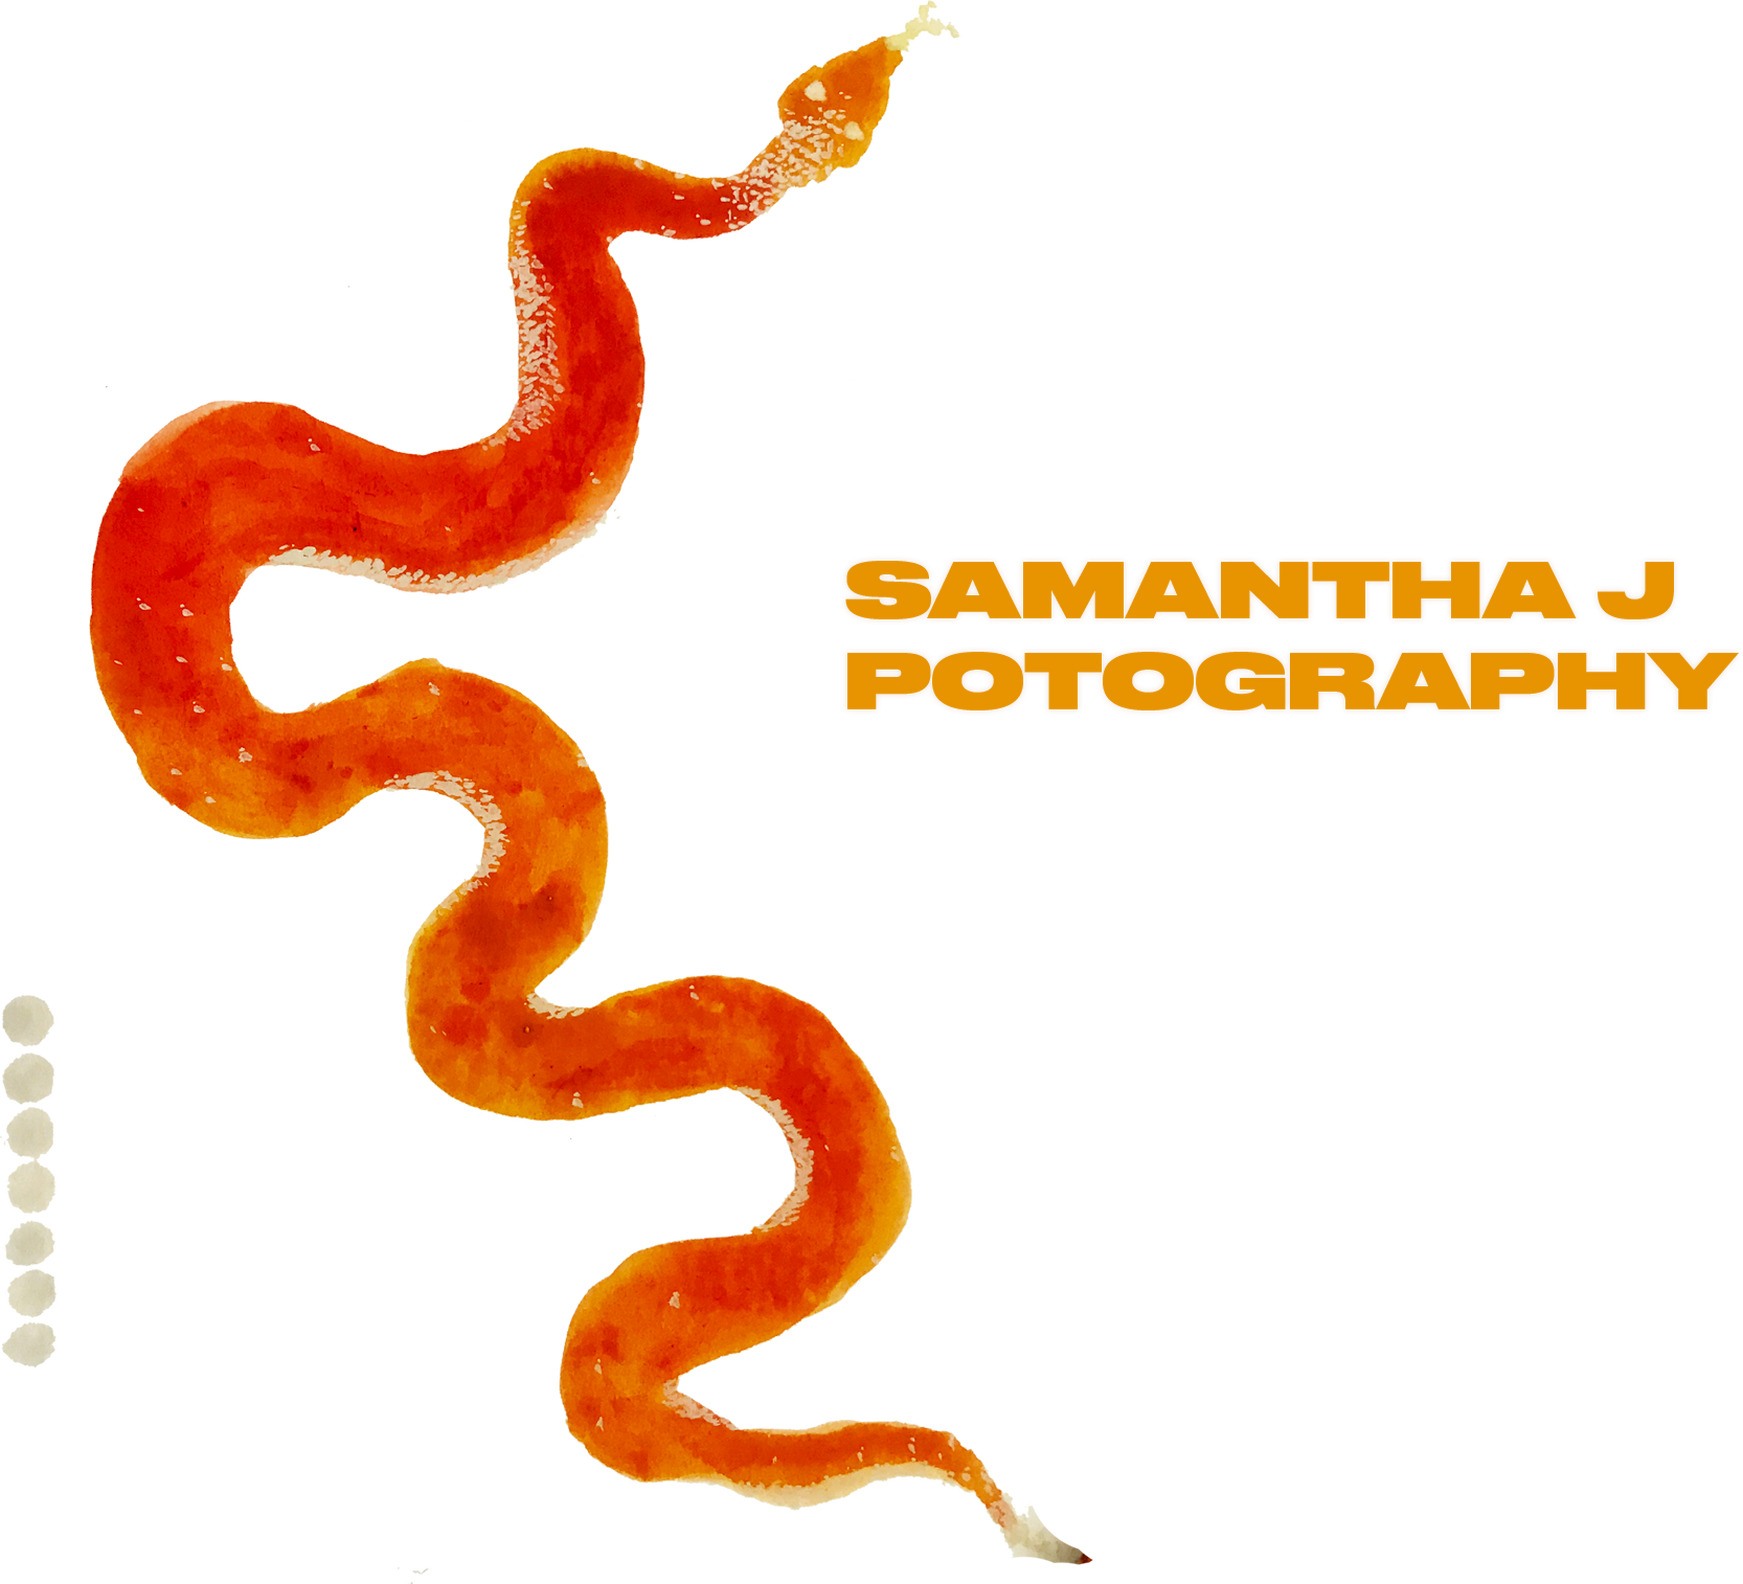 Samantha J